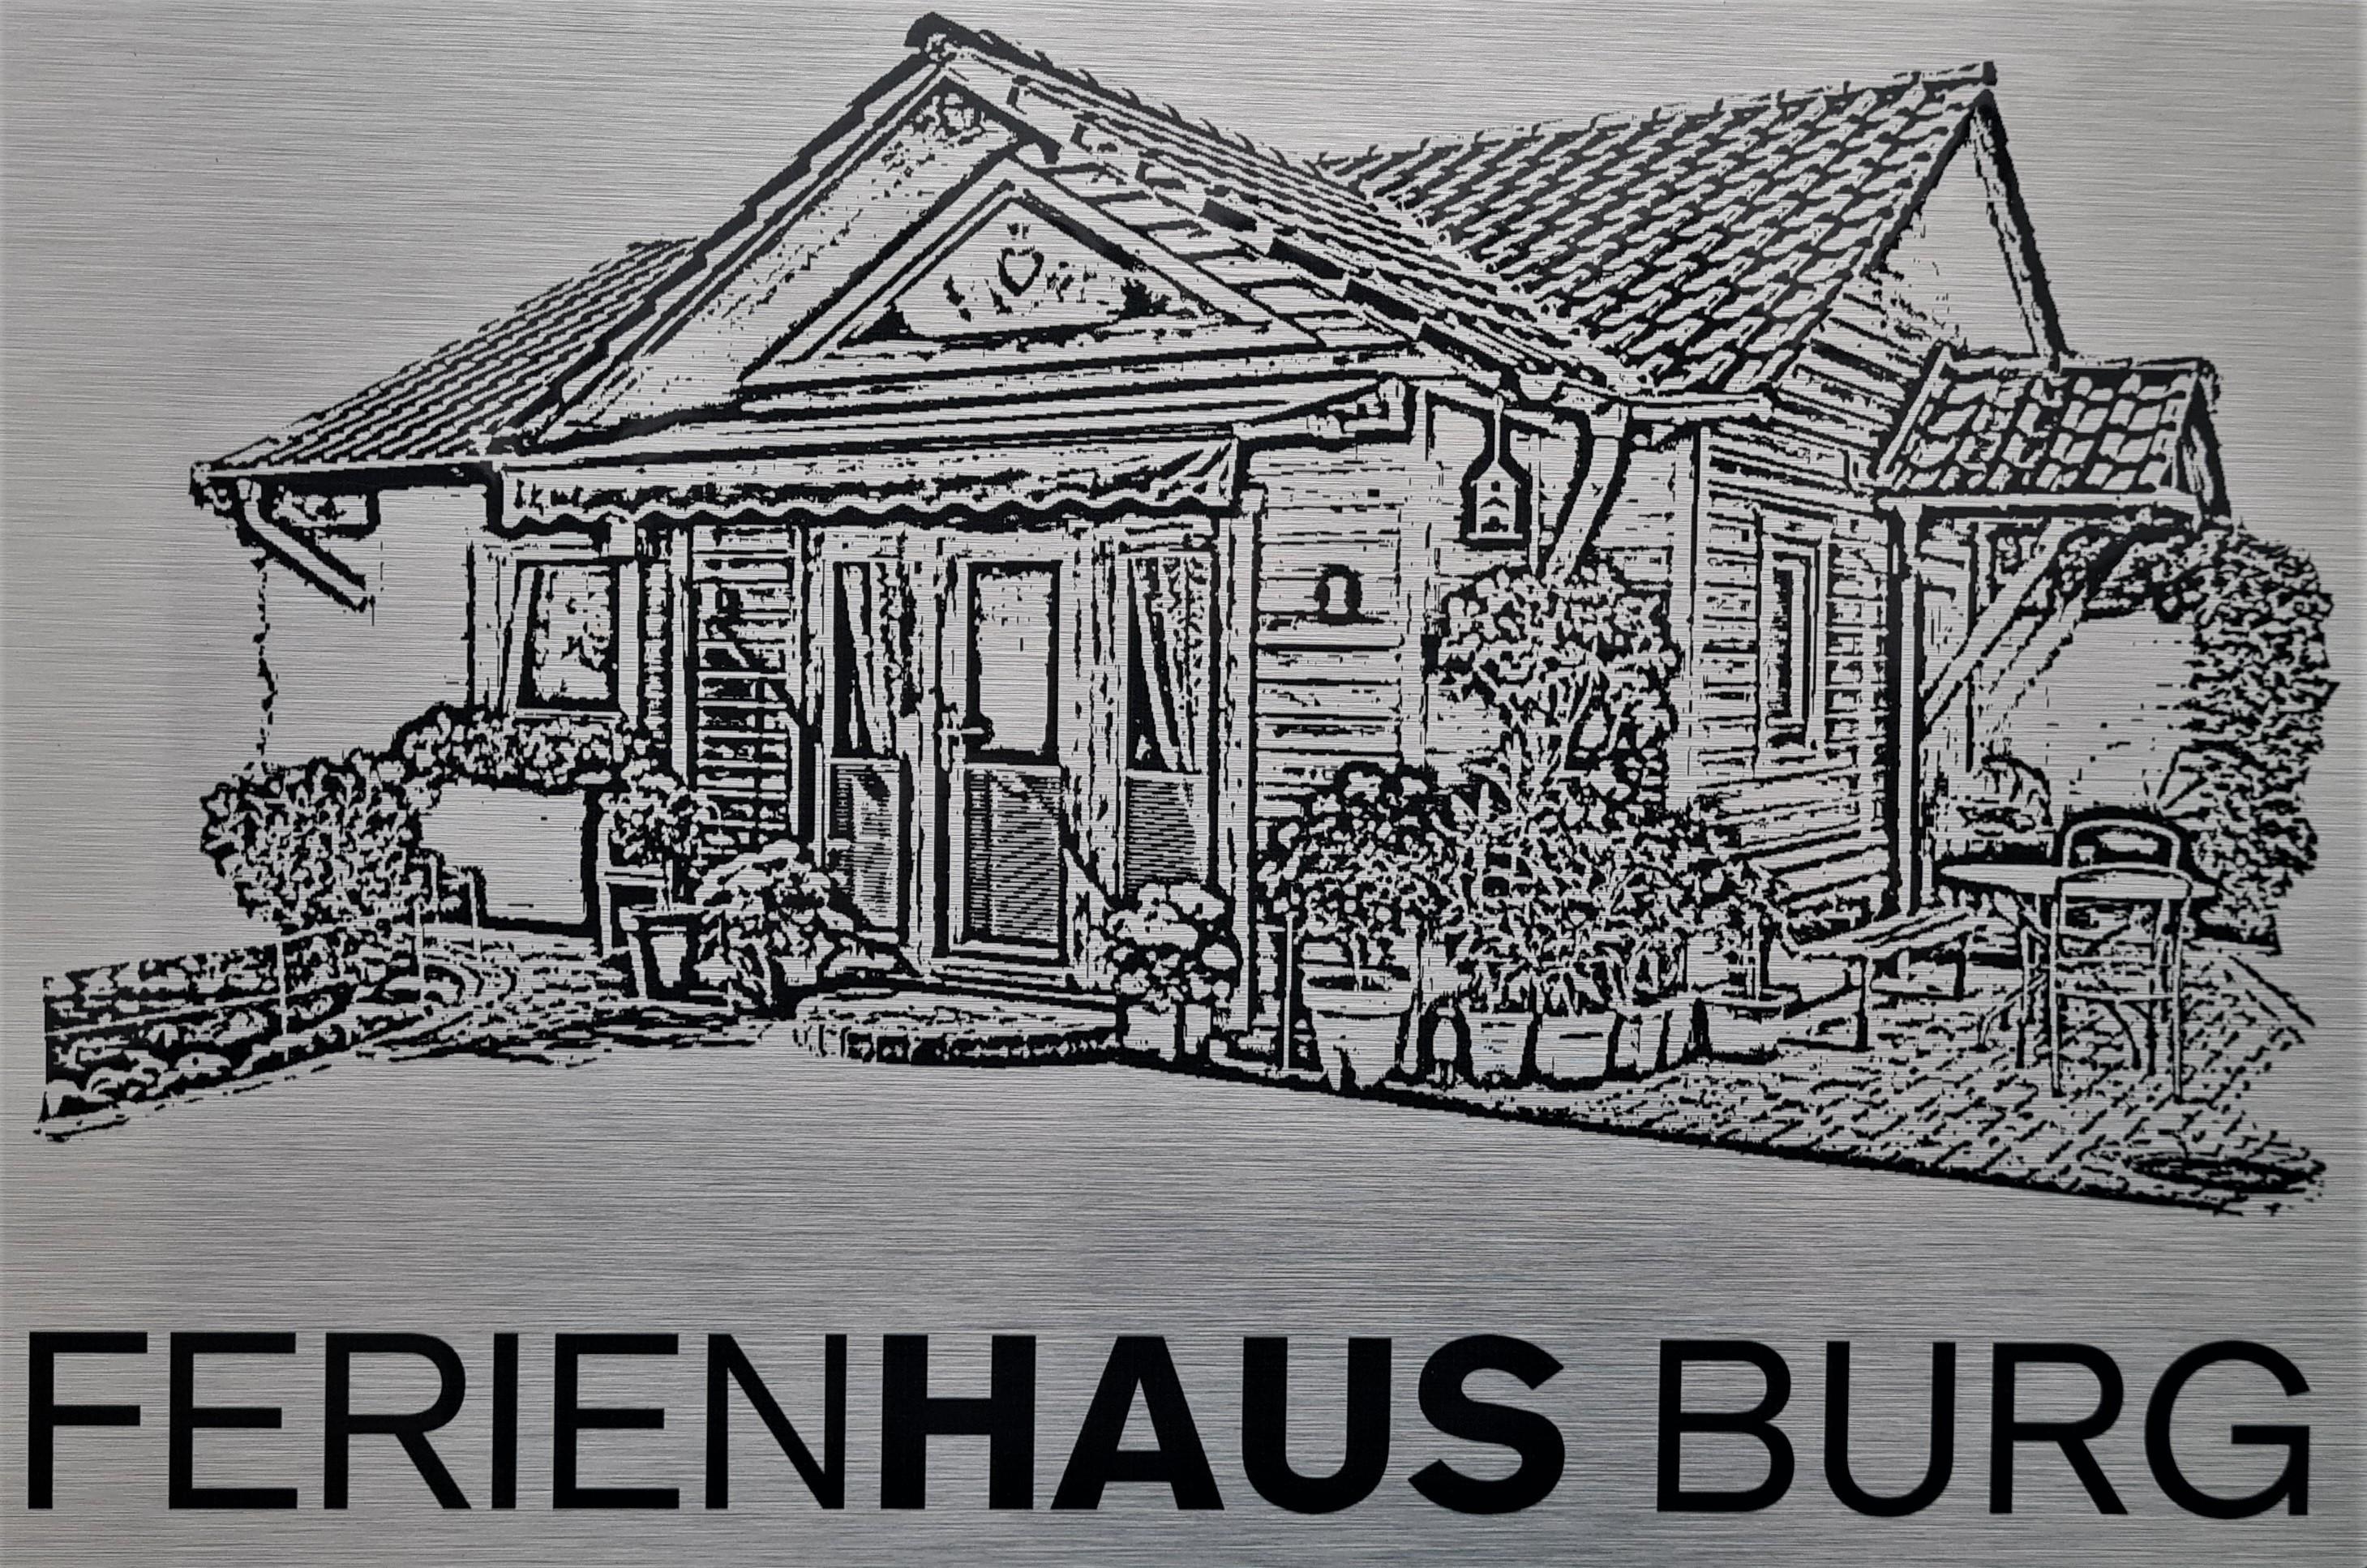 Ferienhaus-Burg Logo